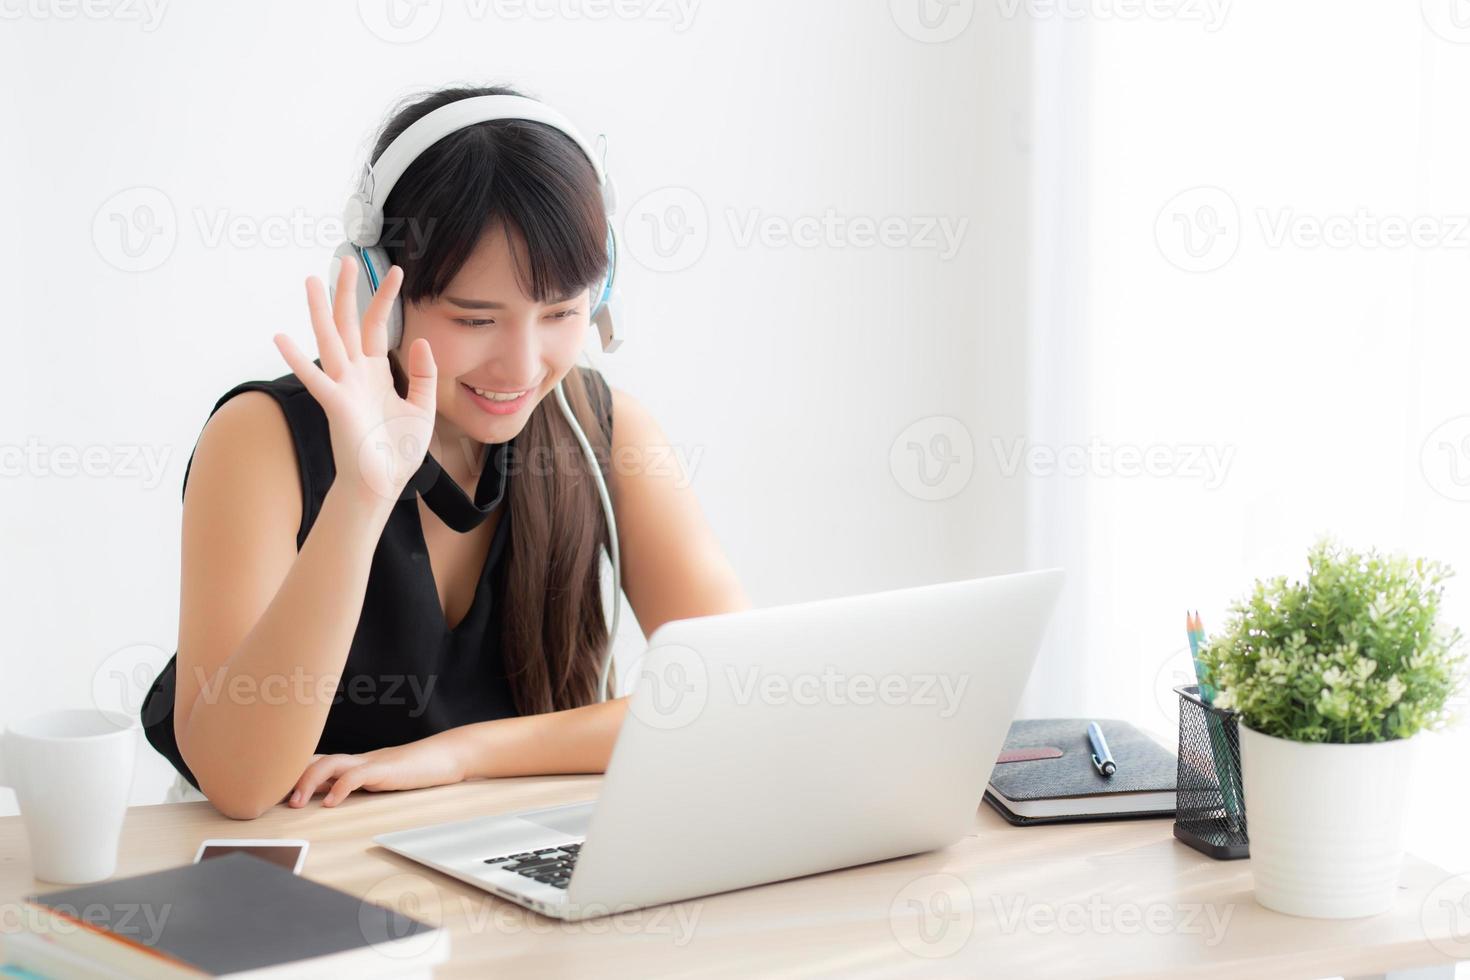 schöne junge asiatische frau trägt kopfhörer lächelnd grüßen mit chat-videoanruf auf laptop-computer, mädchen entspannen genießen sie musik online zu hören, bildung lernen, kommunikation und lifestyle-konzept. foto